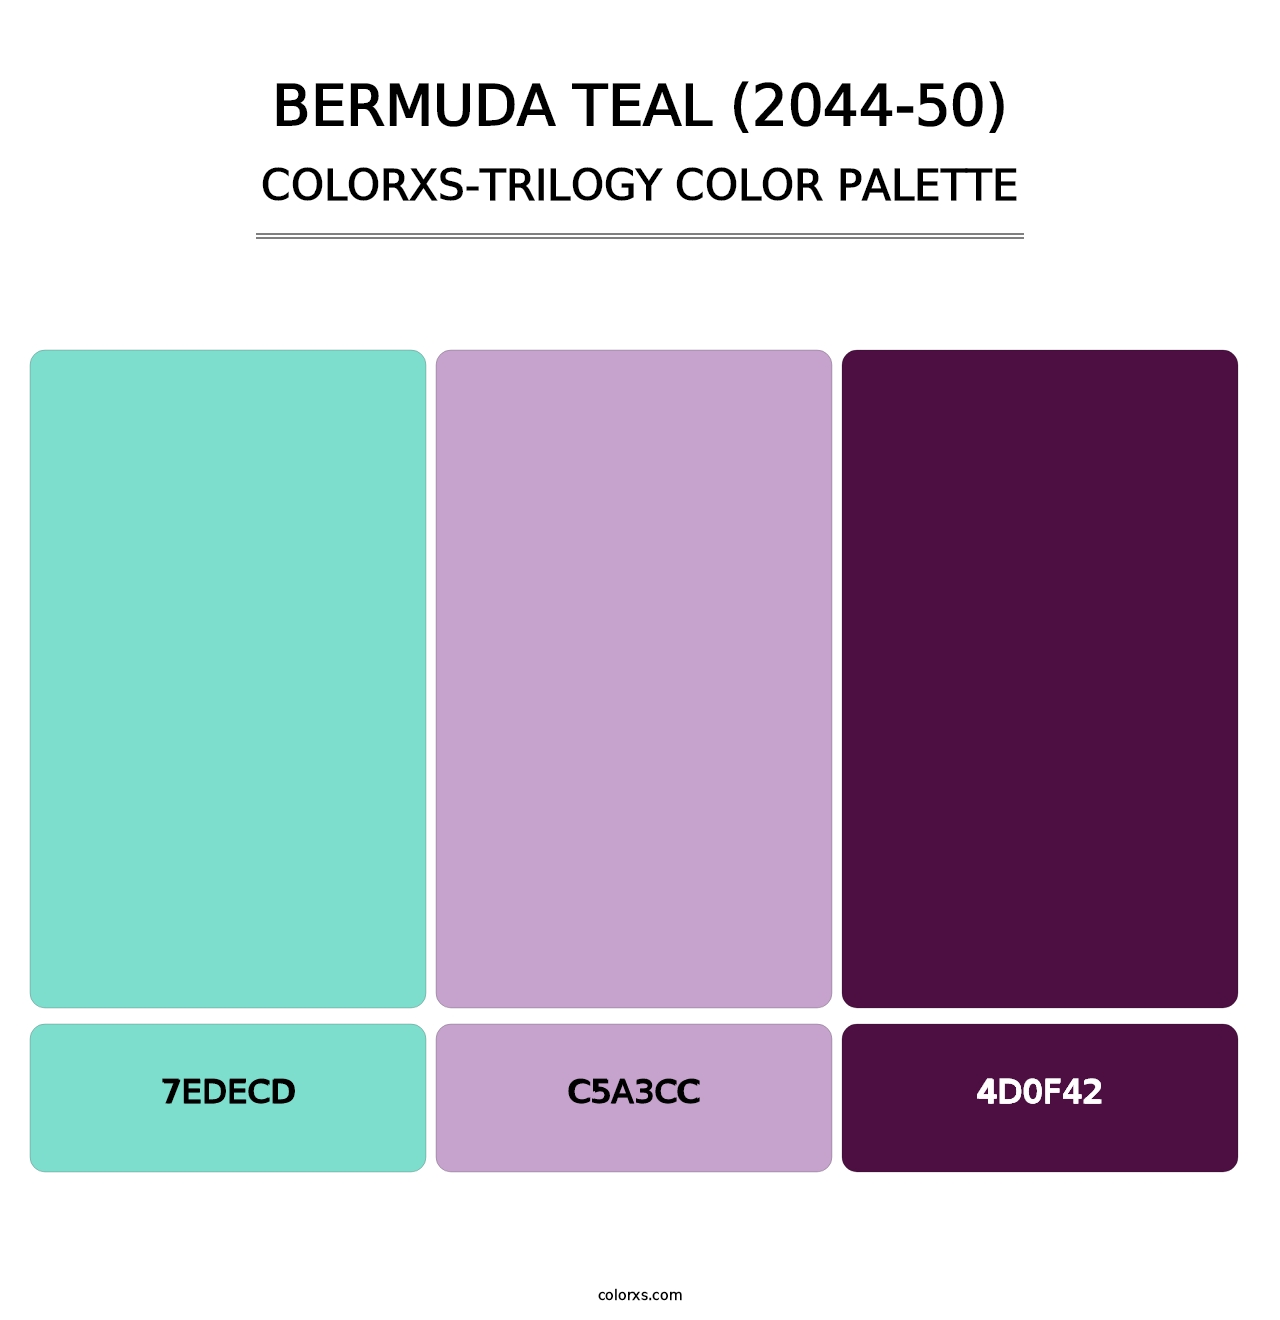 Bermuda Teal (2044-50) - Colorxs Trilogy Palette